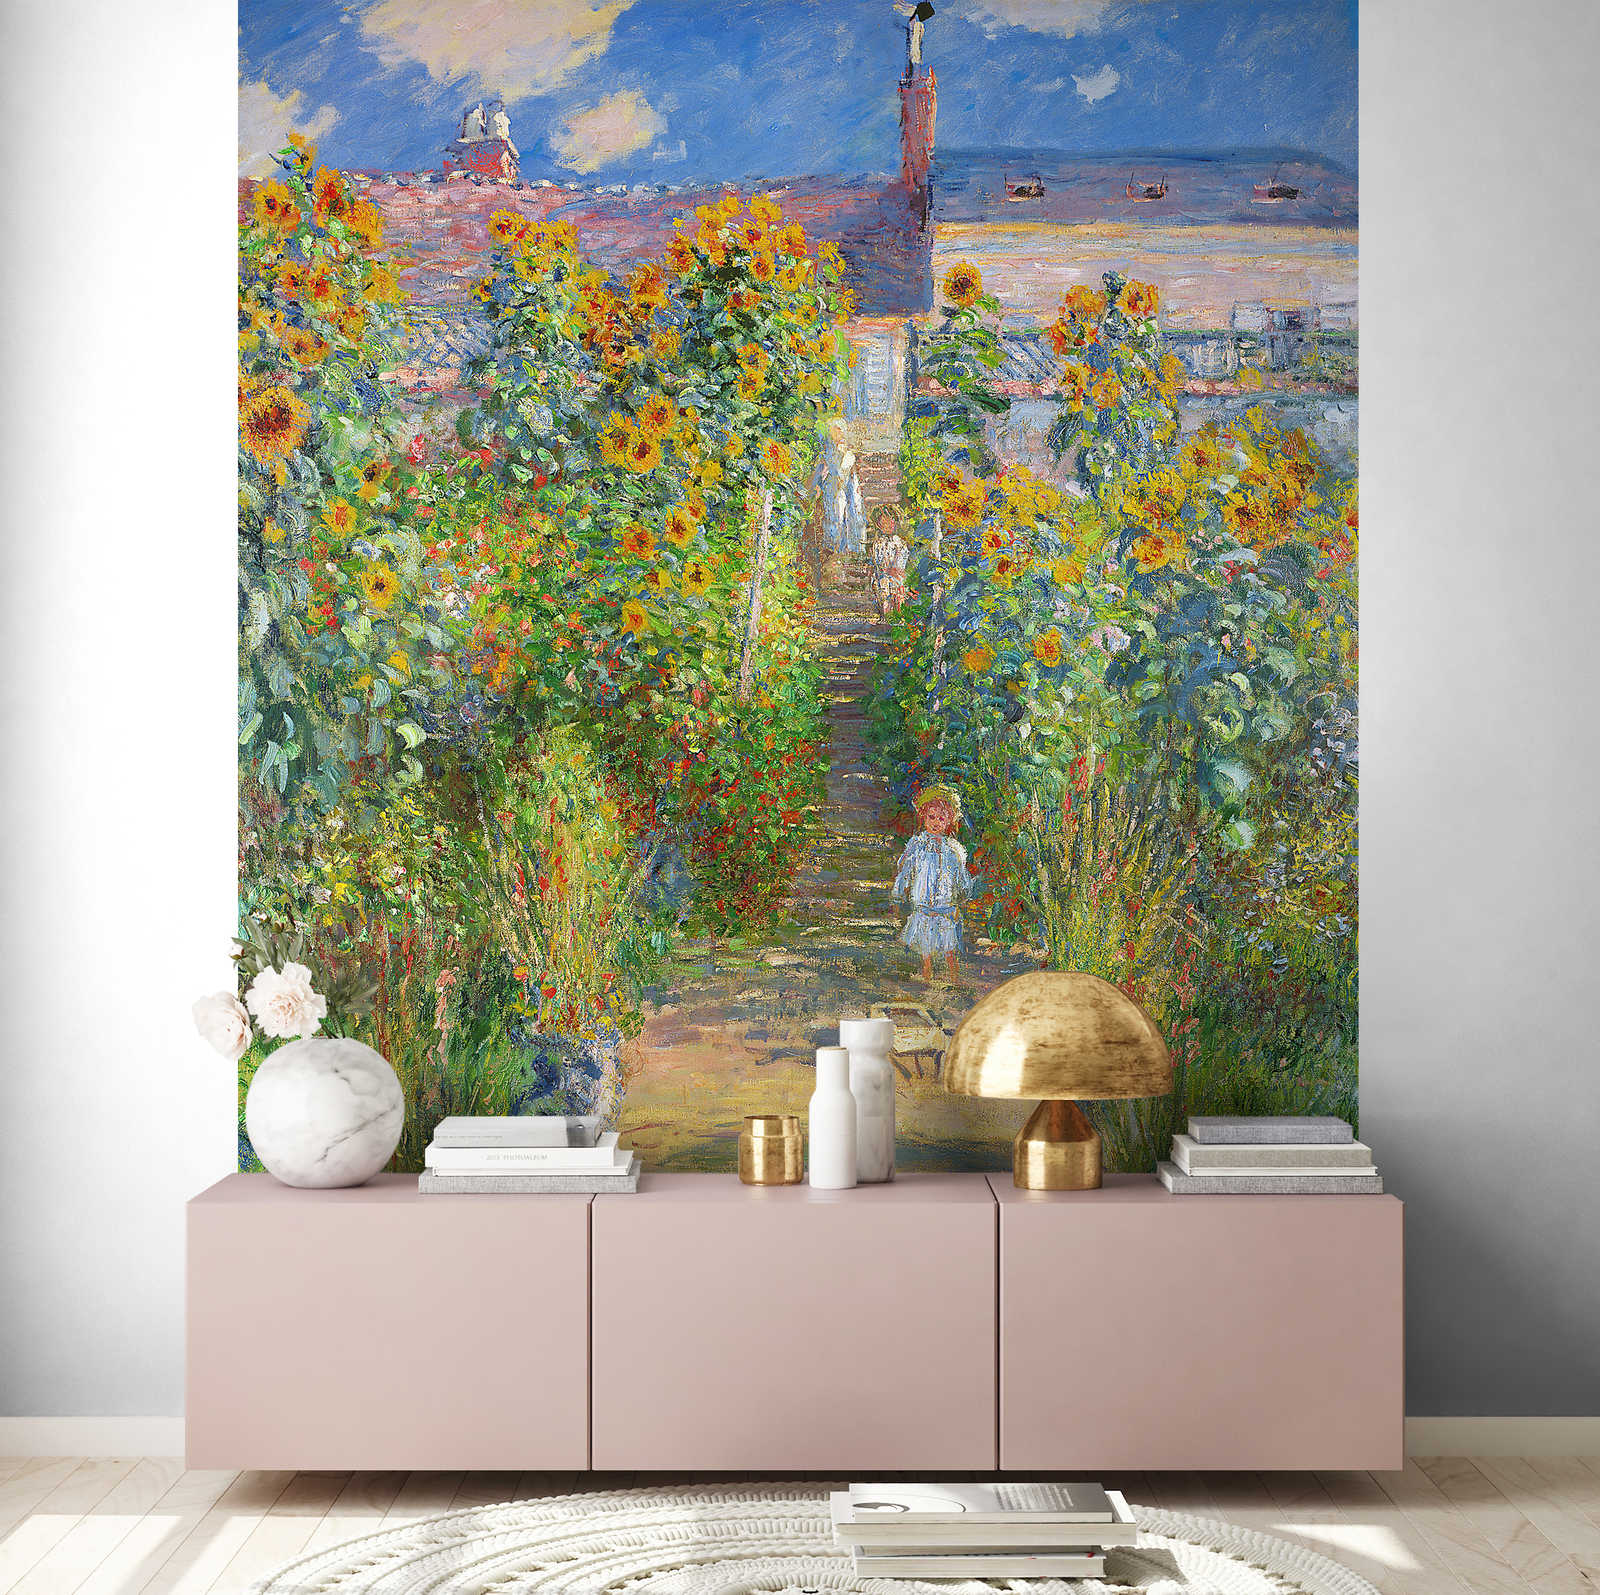             Muurschildering "De tuin van de kunstenaar in Vetheuil" van Claude Monet
        